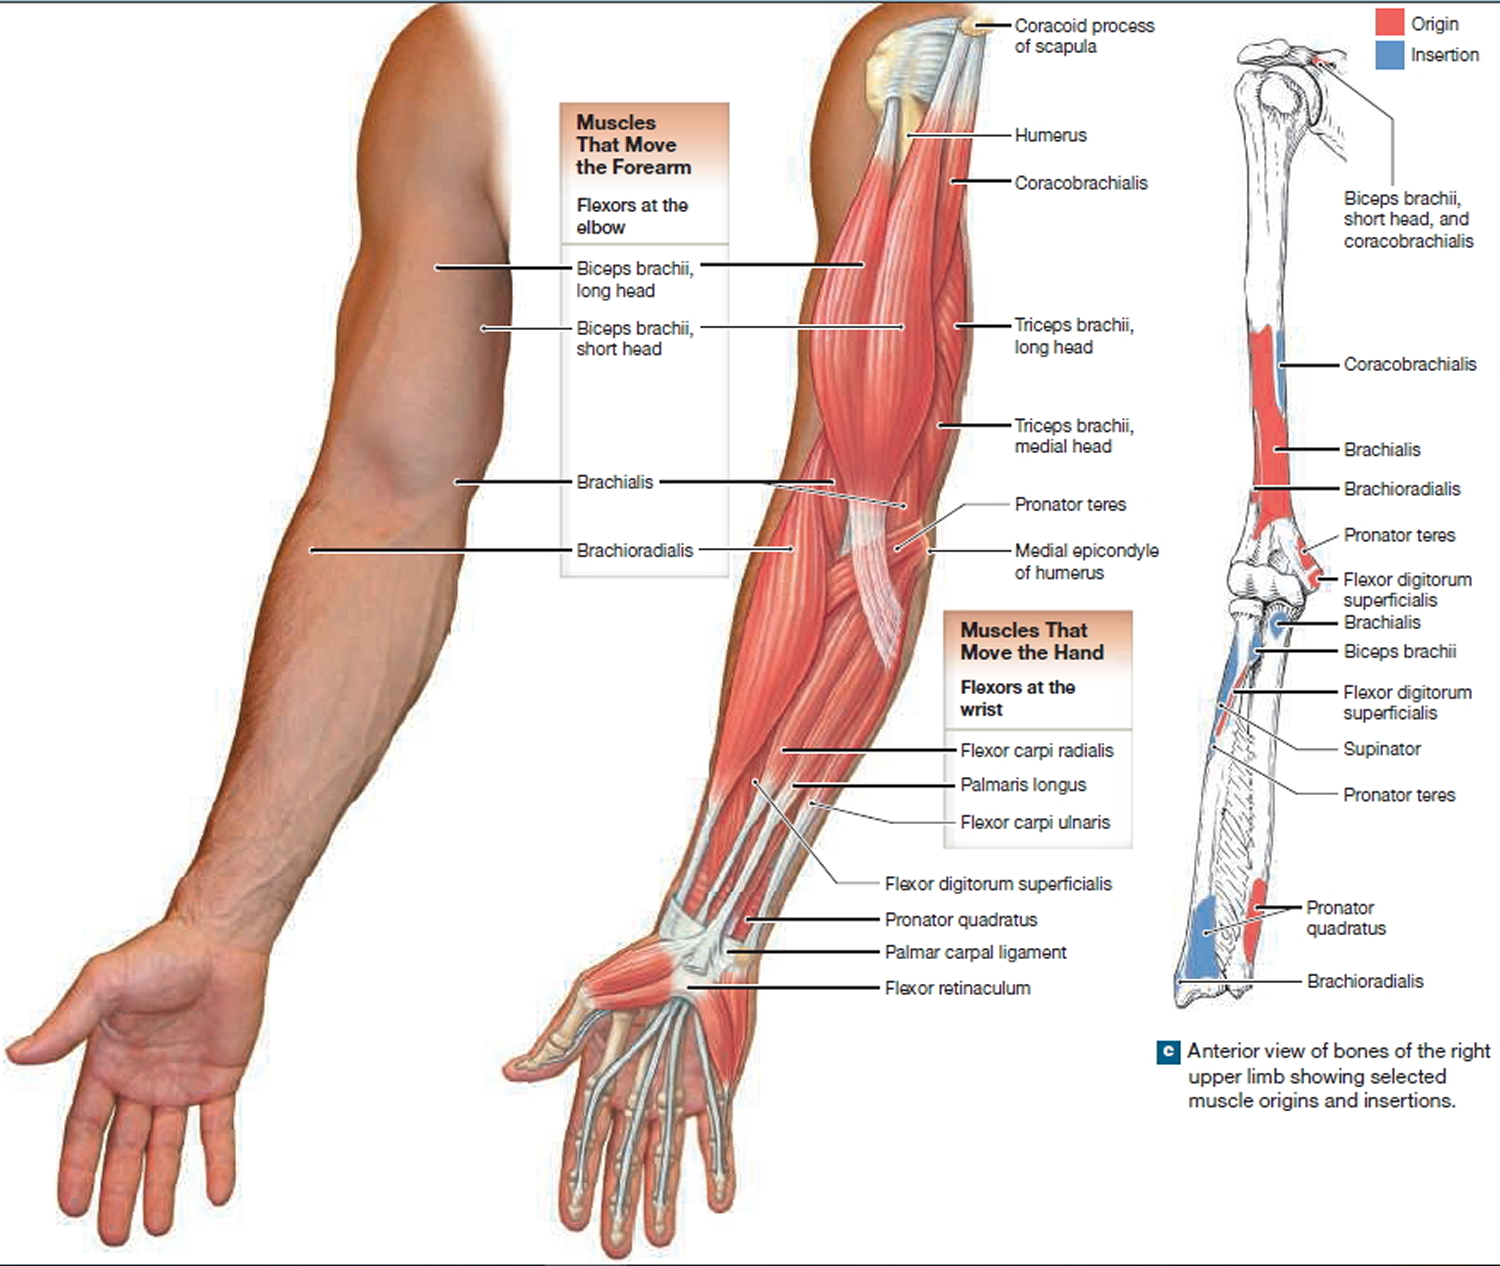 Анатомическое строение предплечья руки человека